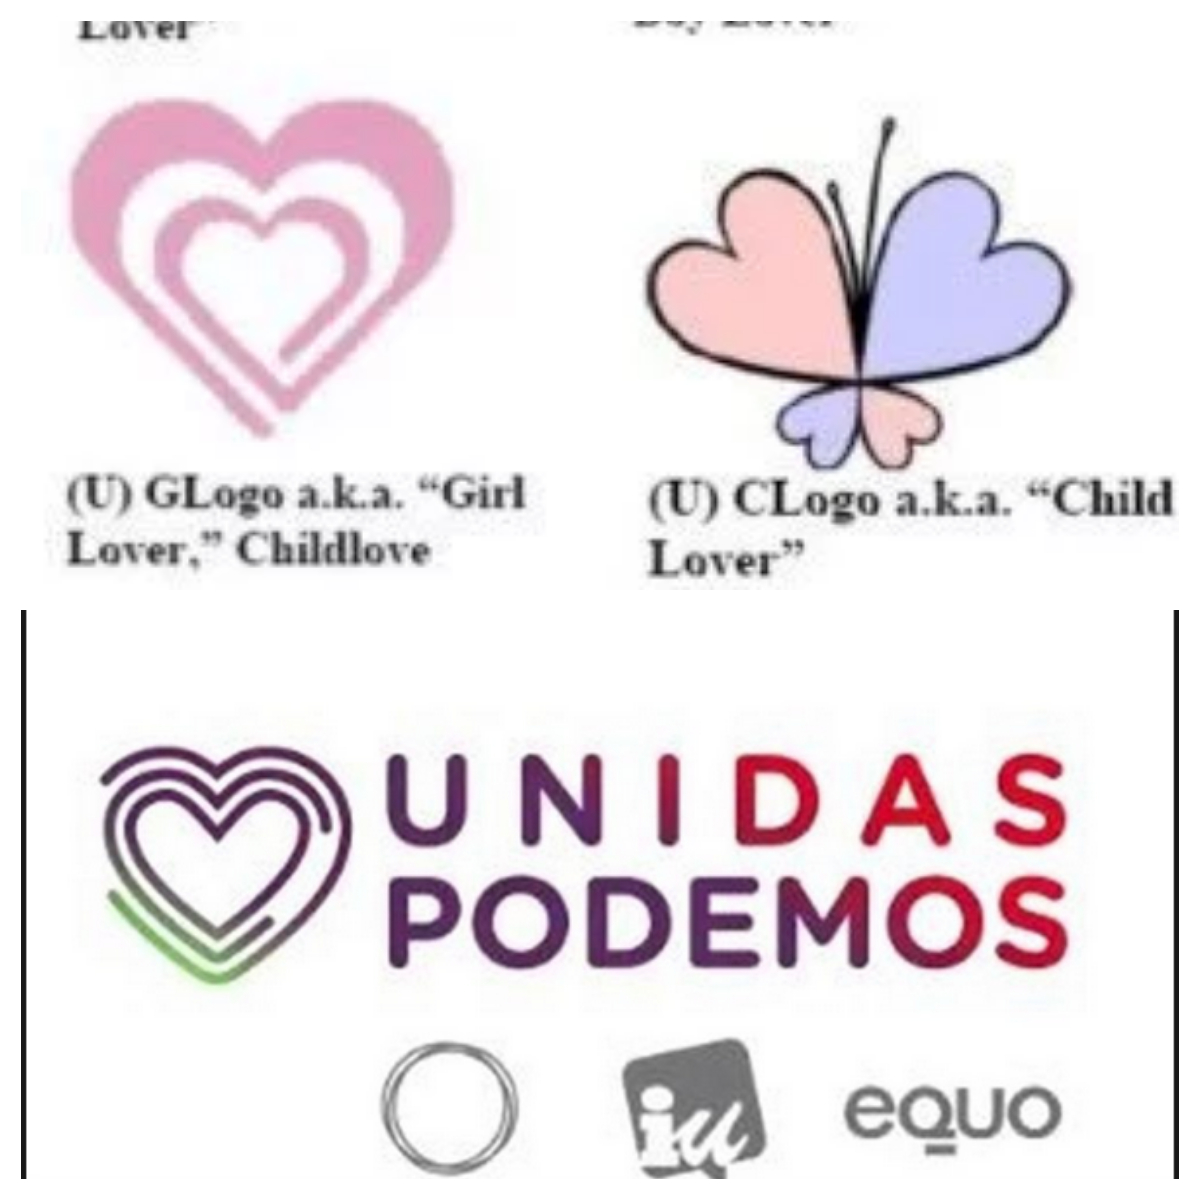 El logo de Unidas Podemos es casi idéntico al que identifica a los pedófilos, según el FBI